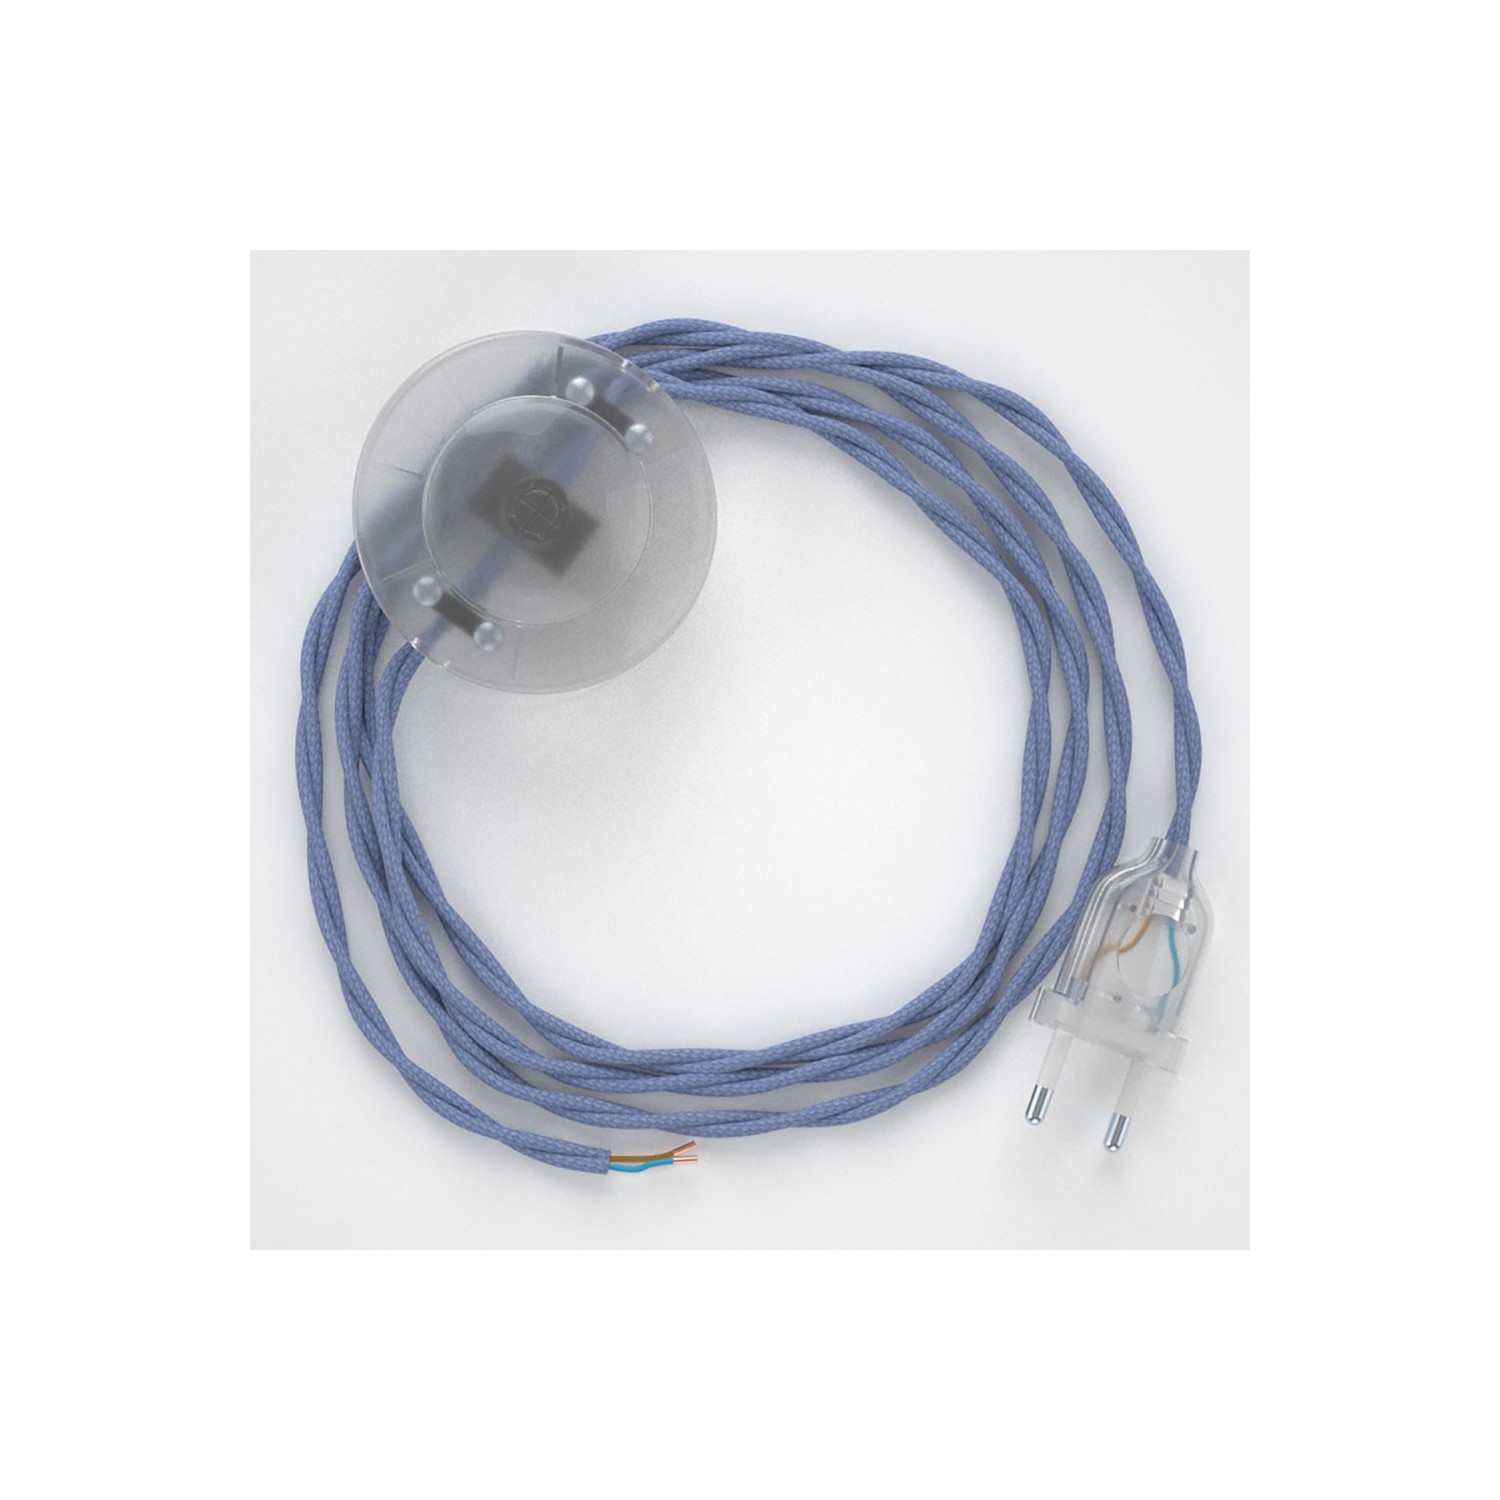 Cordon pour lampadaire, câble TM07 Effet Soie Lilas 3 m. Choisissez la couleur de la fiche et de l'interrupteur!